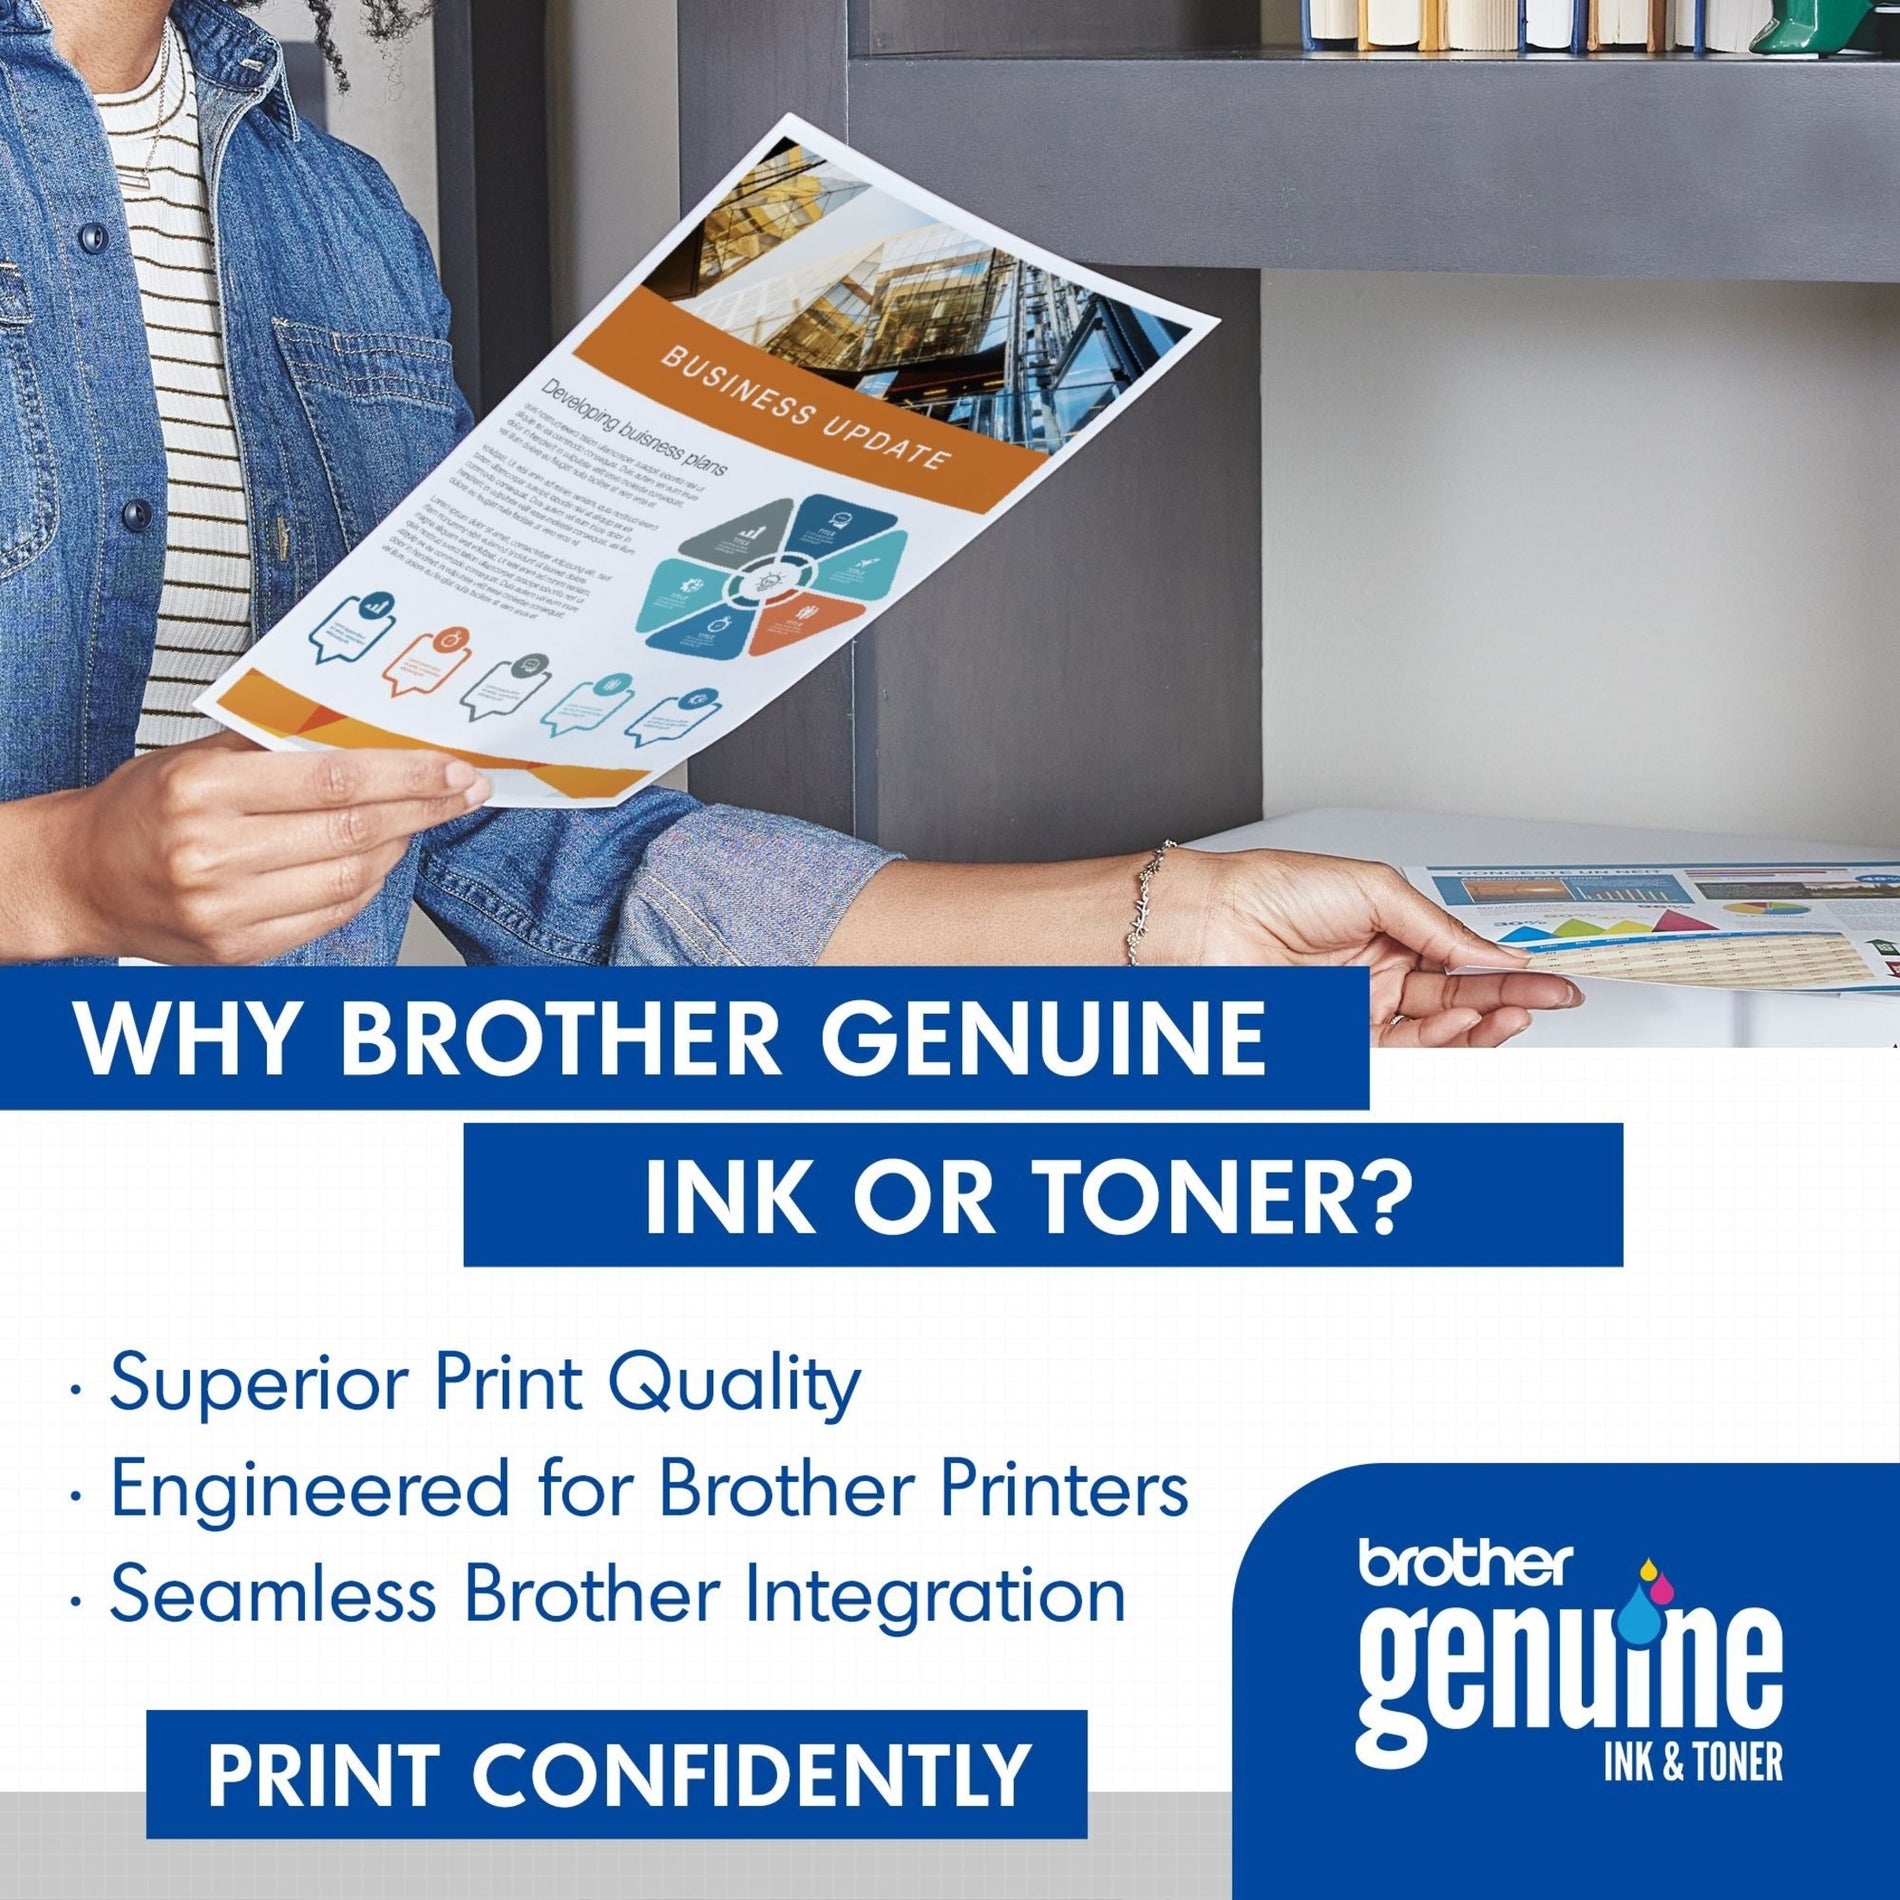 Brother TN433C 墨盒 4000 页高产量 青色  品牌名称: 兄弟 (Brother)